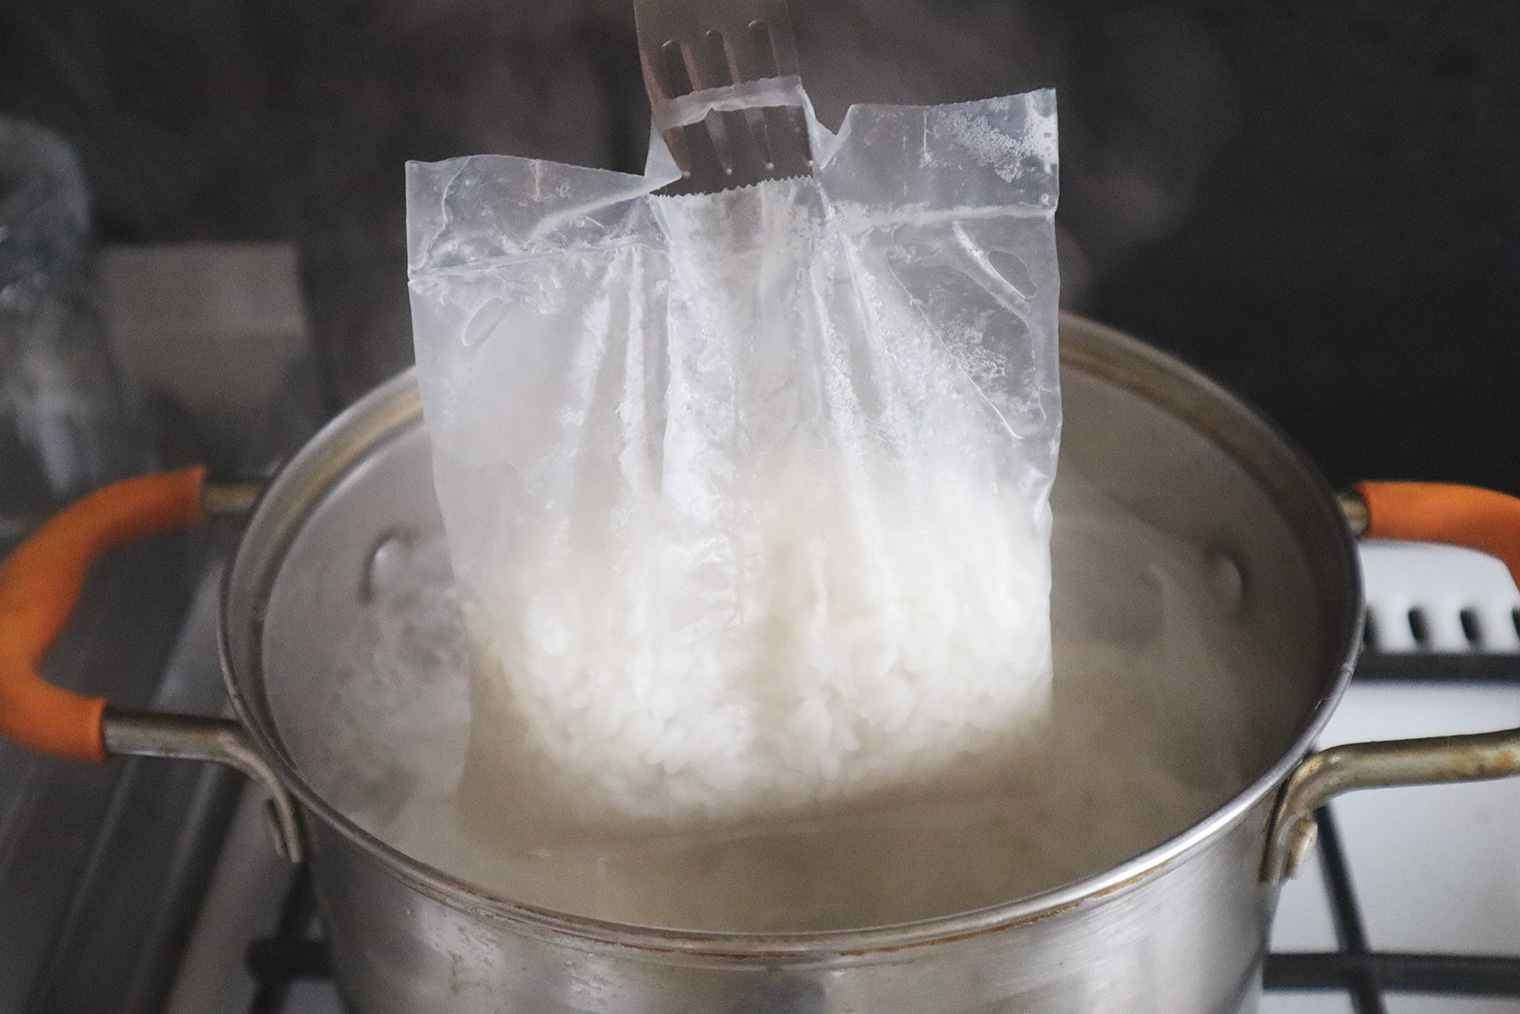 Если варите рис в пакетиках, воду отмерять не нужно: достаточно, чтобы она покрывала пакет. Но размер порции подходит не всем — может остаться лишний рис